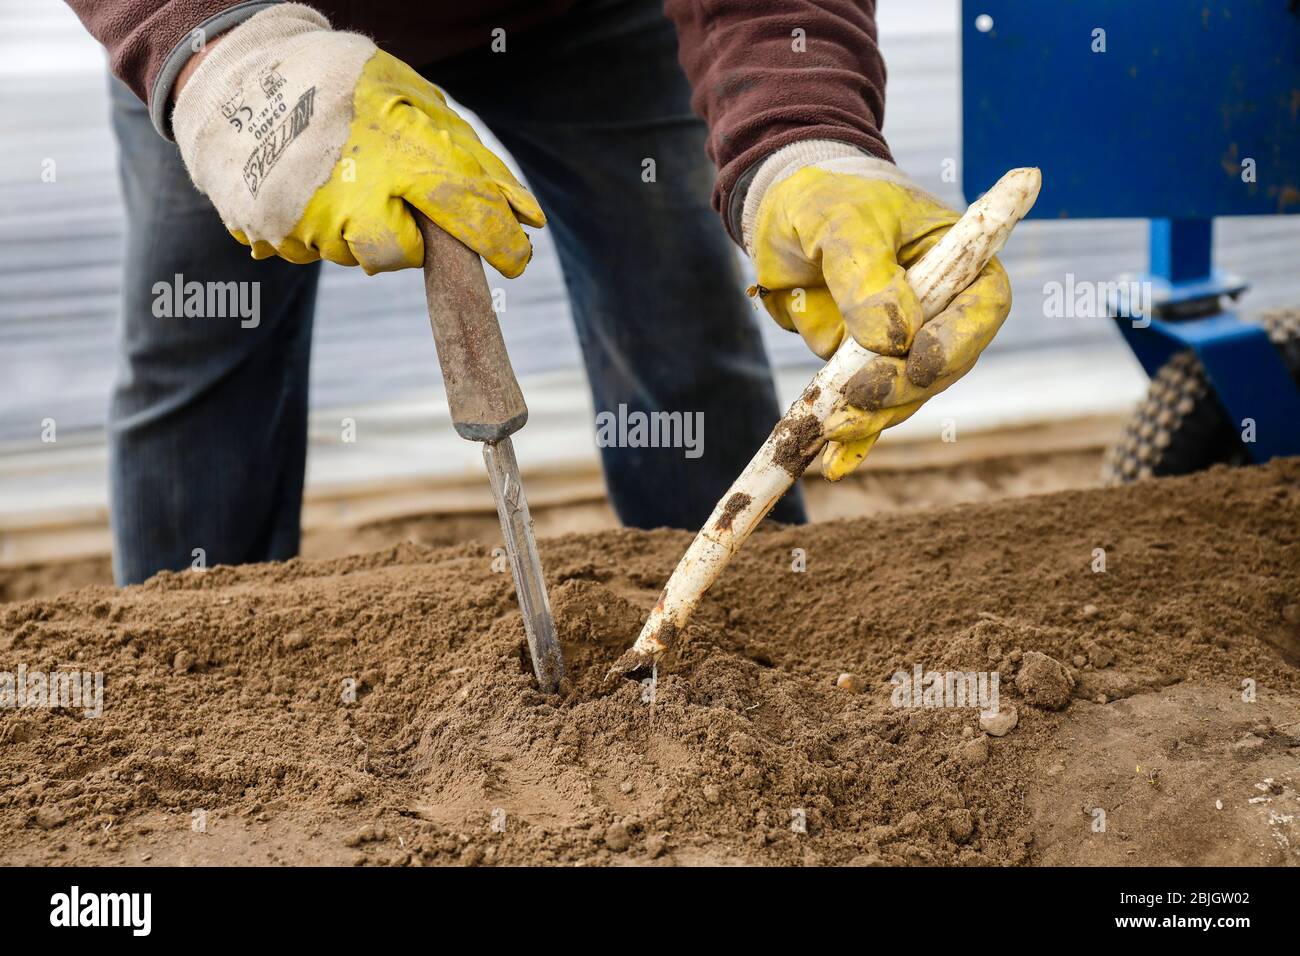 Travailleurs saisonniers travaillant sur un champ d'asperges tout en récoltant des asperges, des Herten, de la Ruhr, de la Rhénanie-du-Nord-Westphalie, Allemagne Banque D'Images